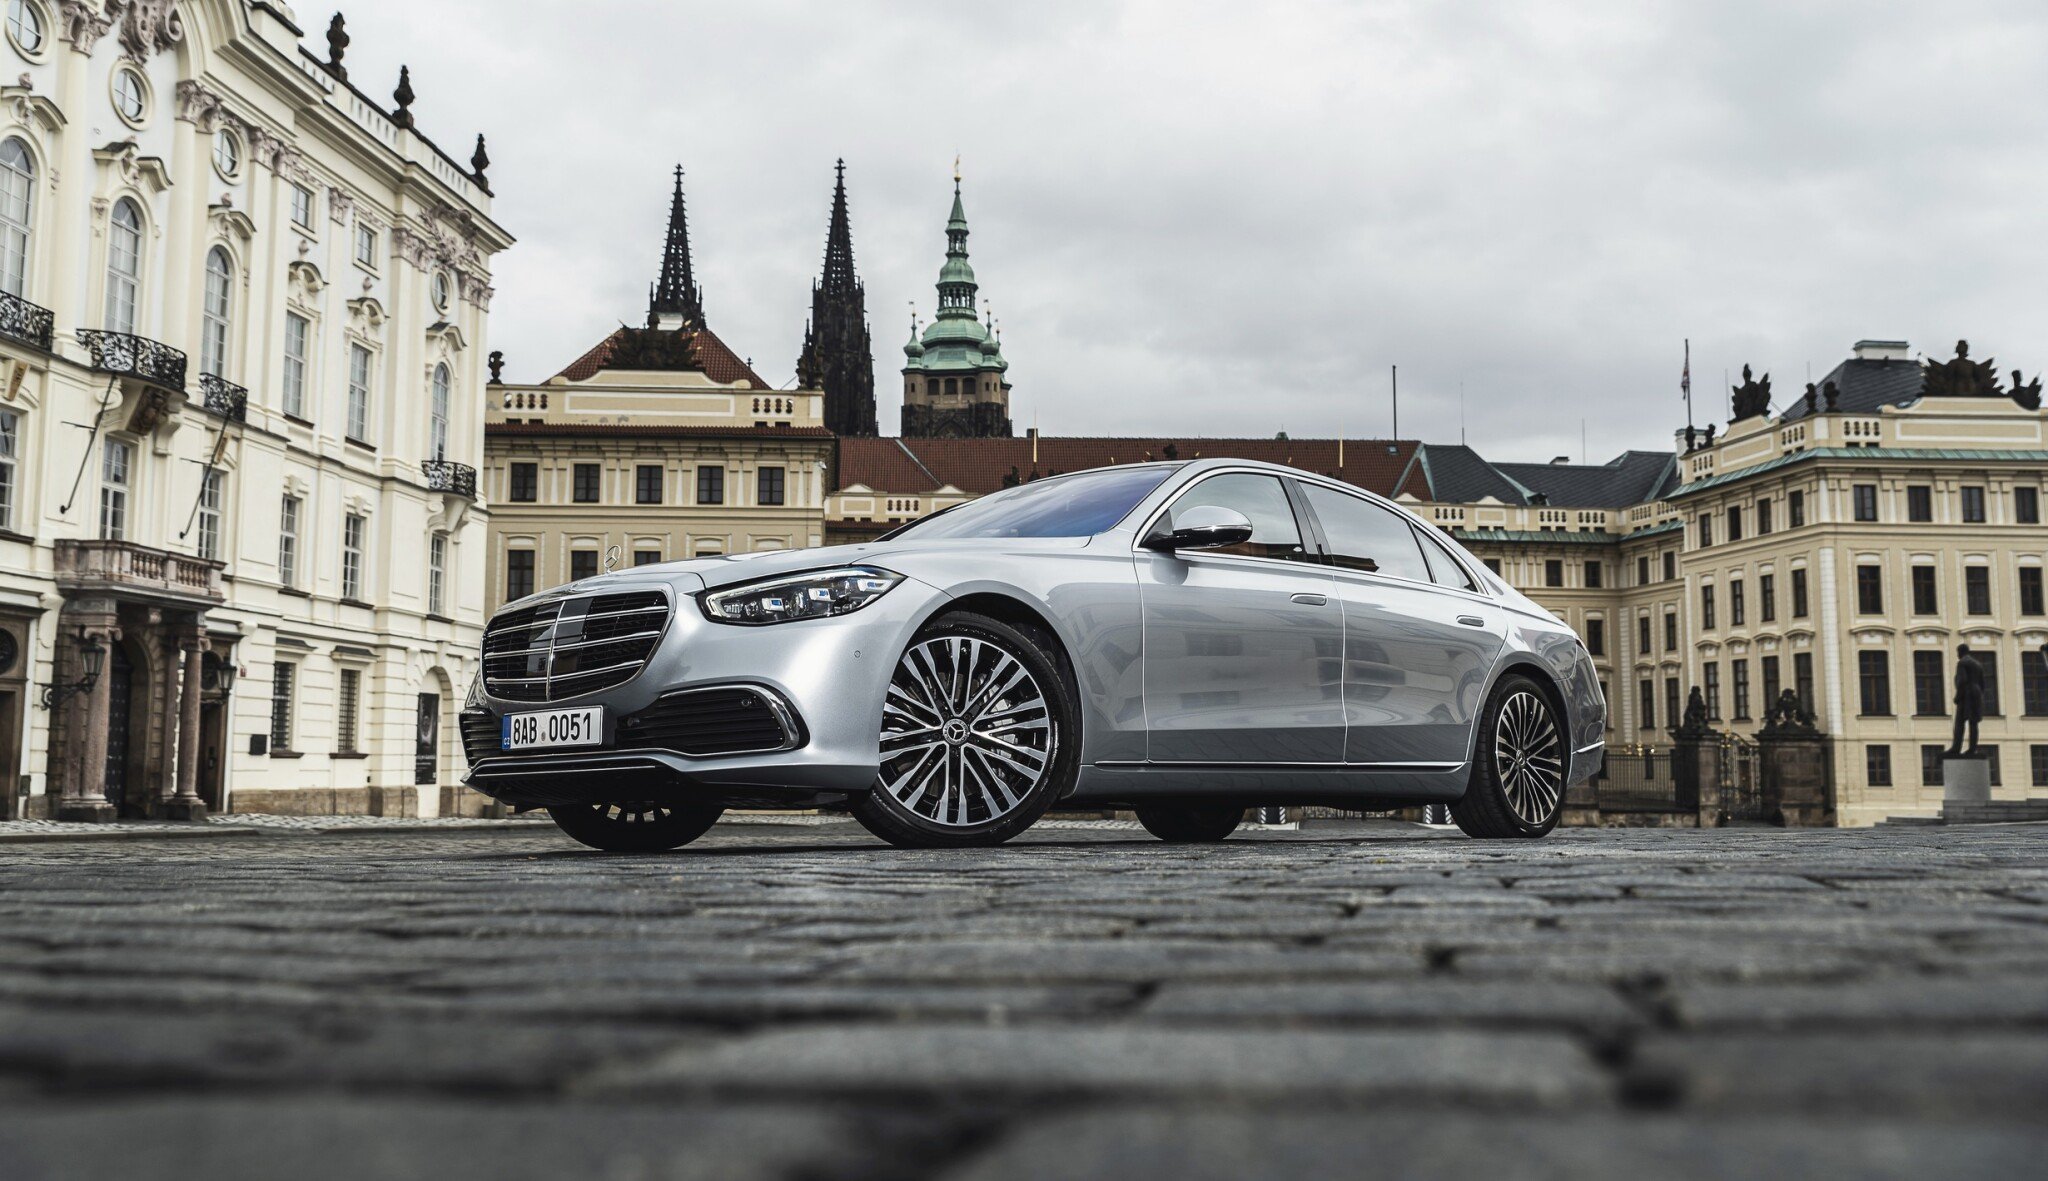 Ostatní padají, Mercedes roste. V Praze si odbyla premiéru nová verze luxusní třídy S